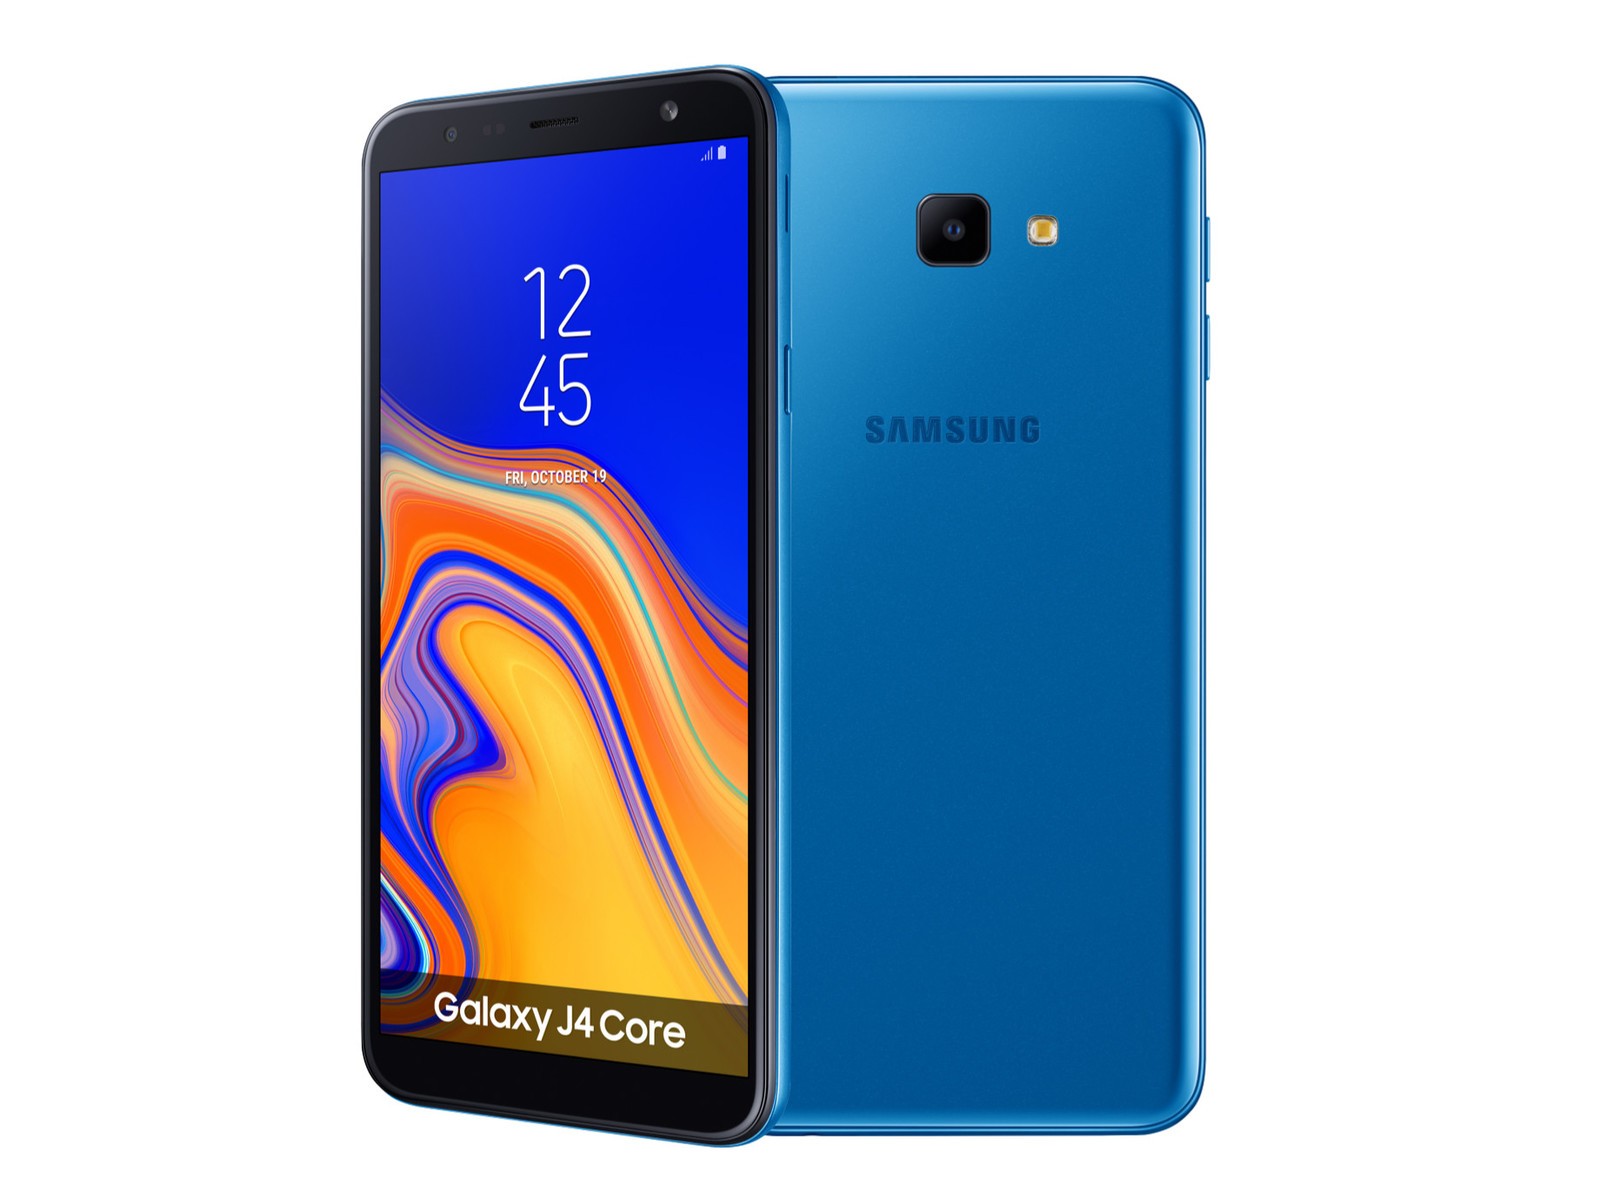 Haftaya A101 marketler Türkiye’de ilk kez Samsung Android Go telefonu satacak